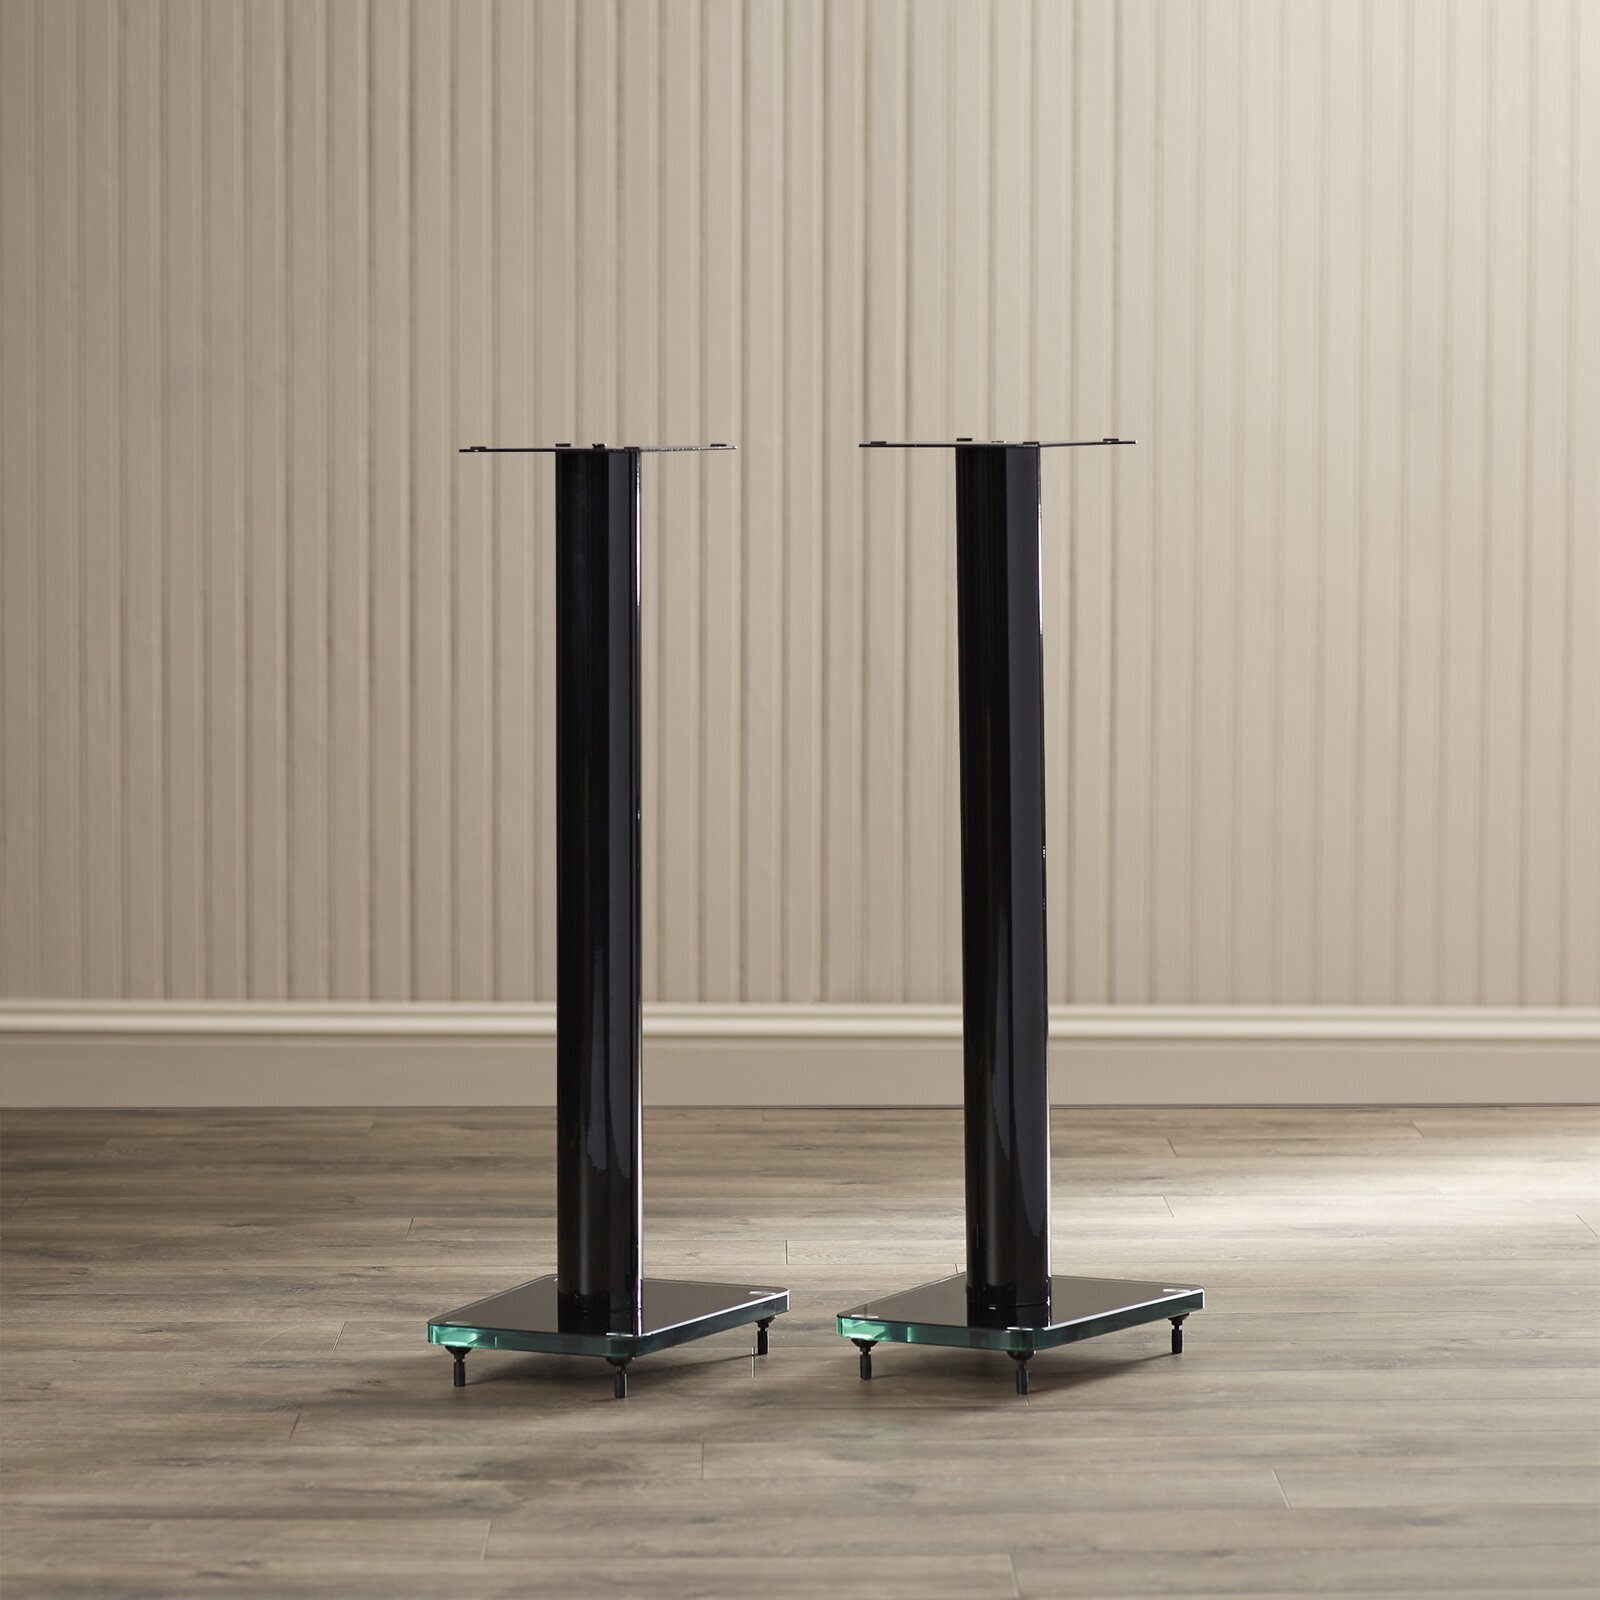 Pedestal Type Speaker Stand